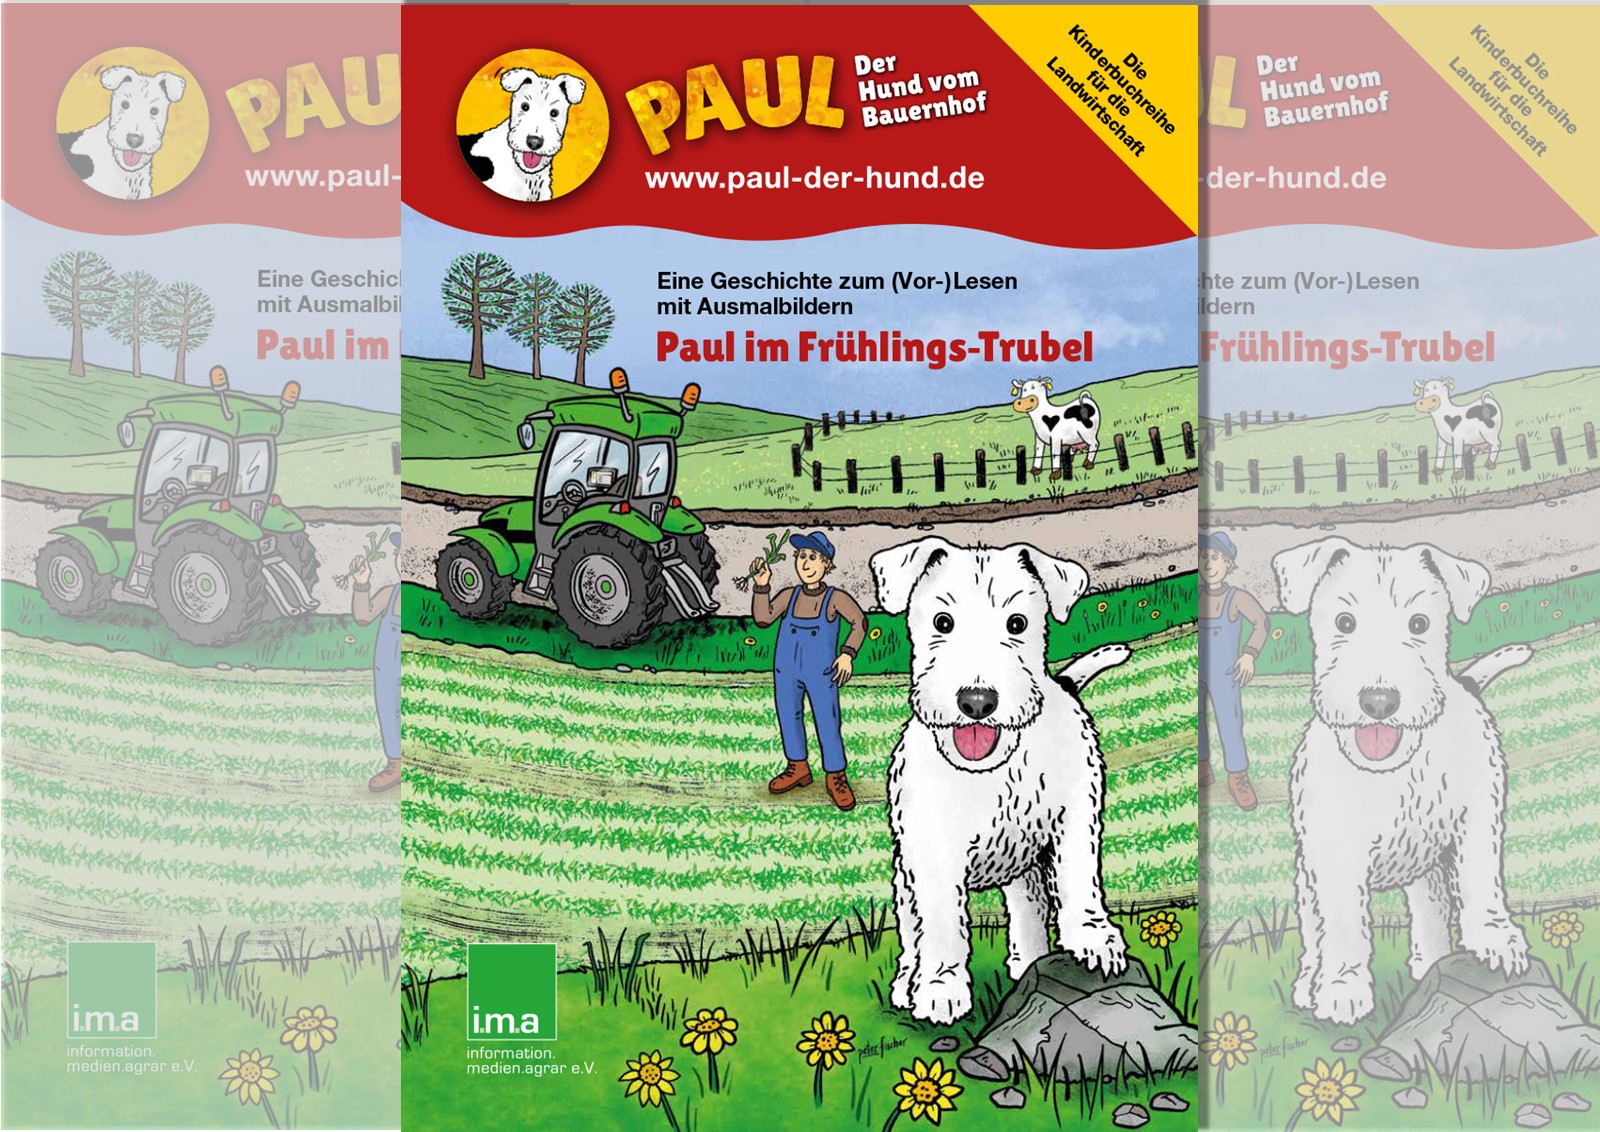 Landwirtschaft kinderleicht: Paul – der Hund vom Bauernhof